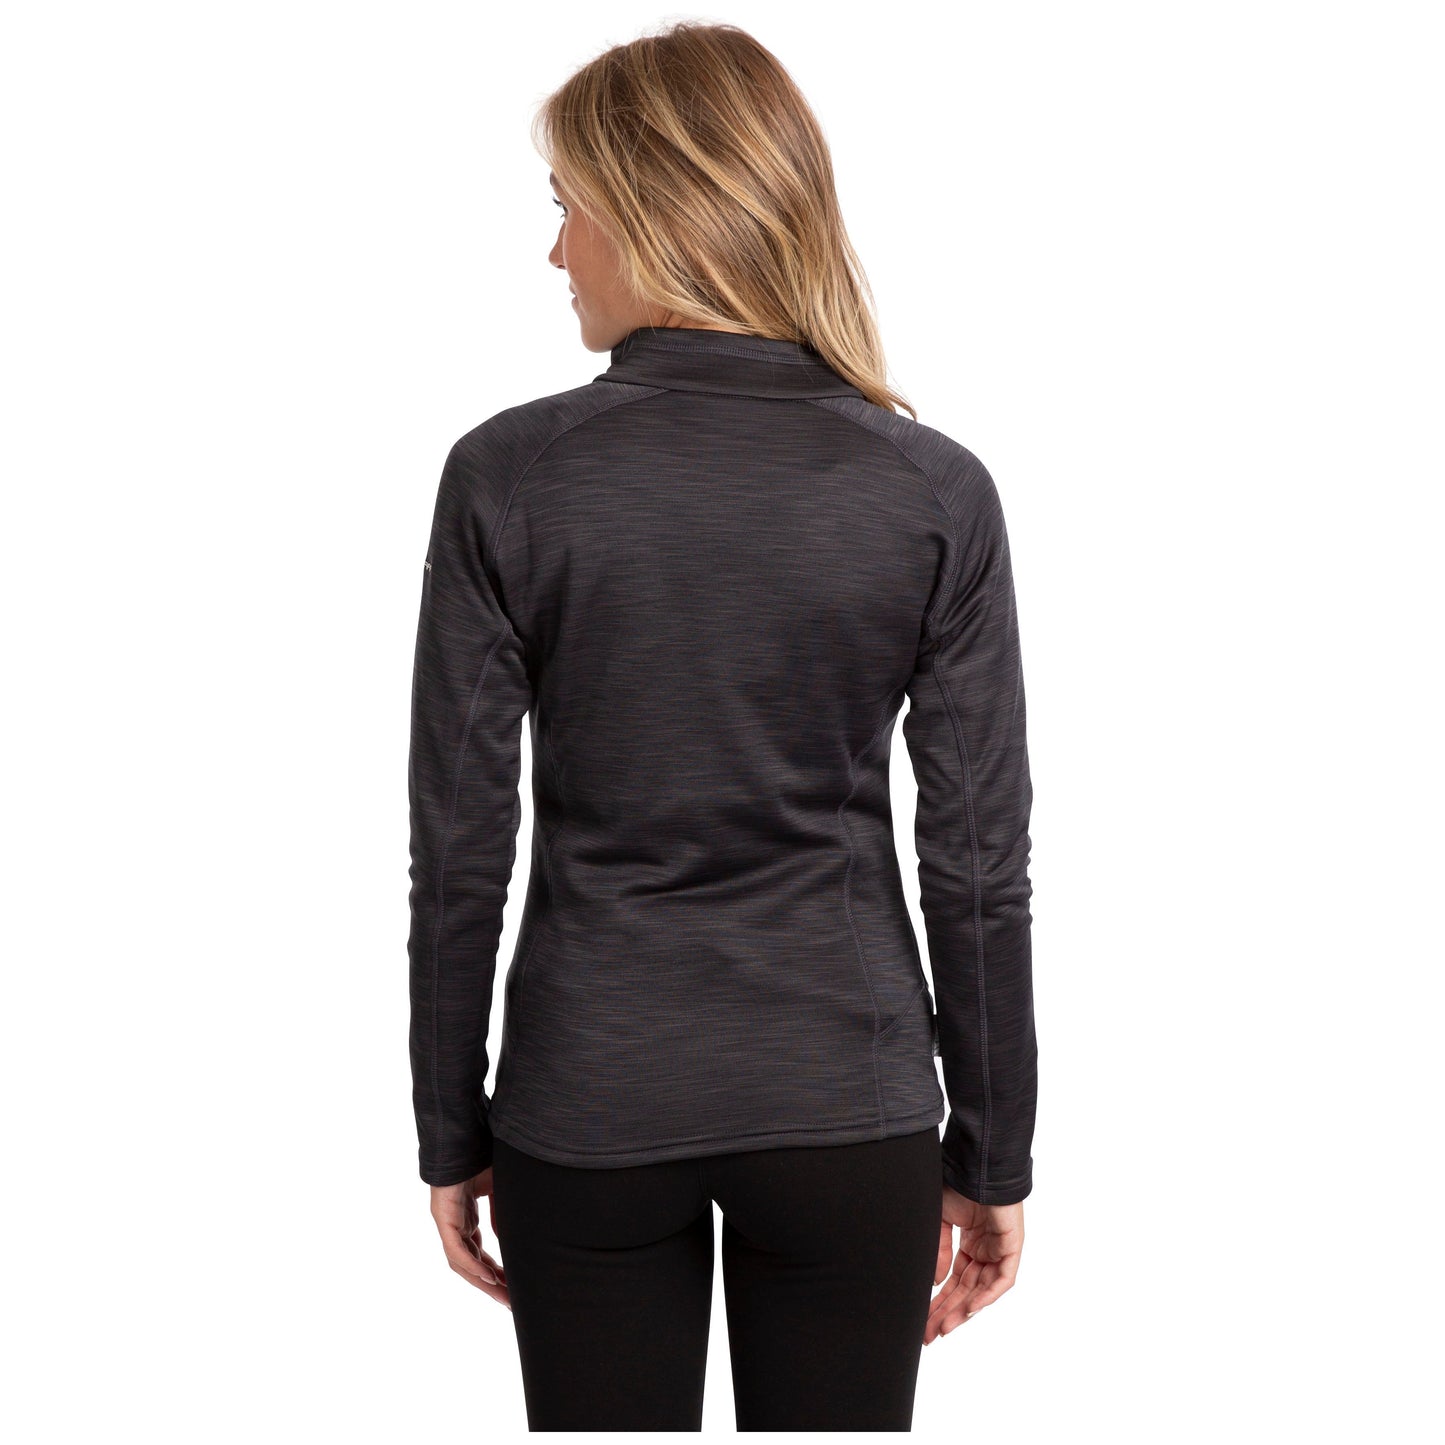 Fairford Women's Half Zip Fleece Top in Black Marl